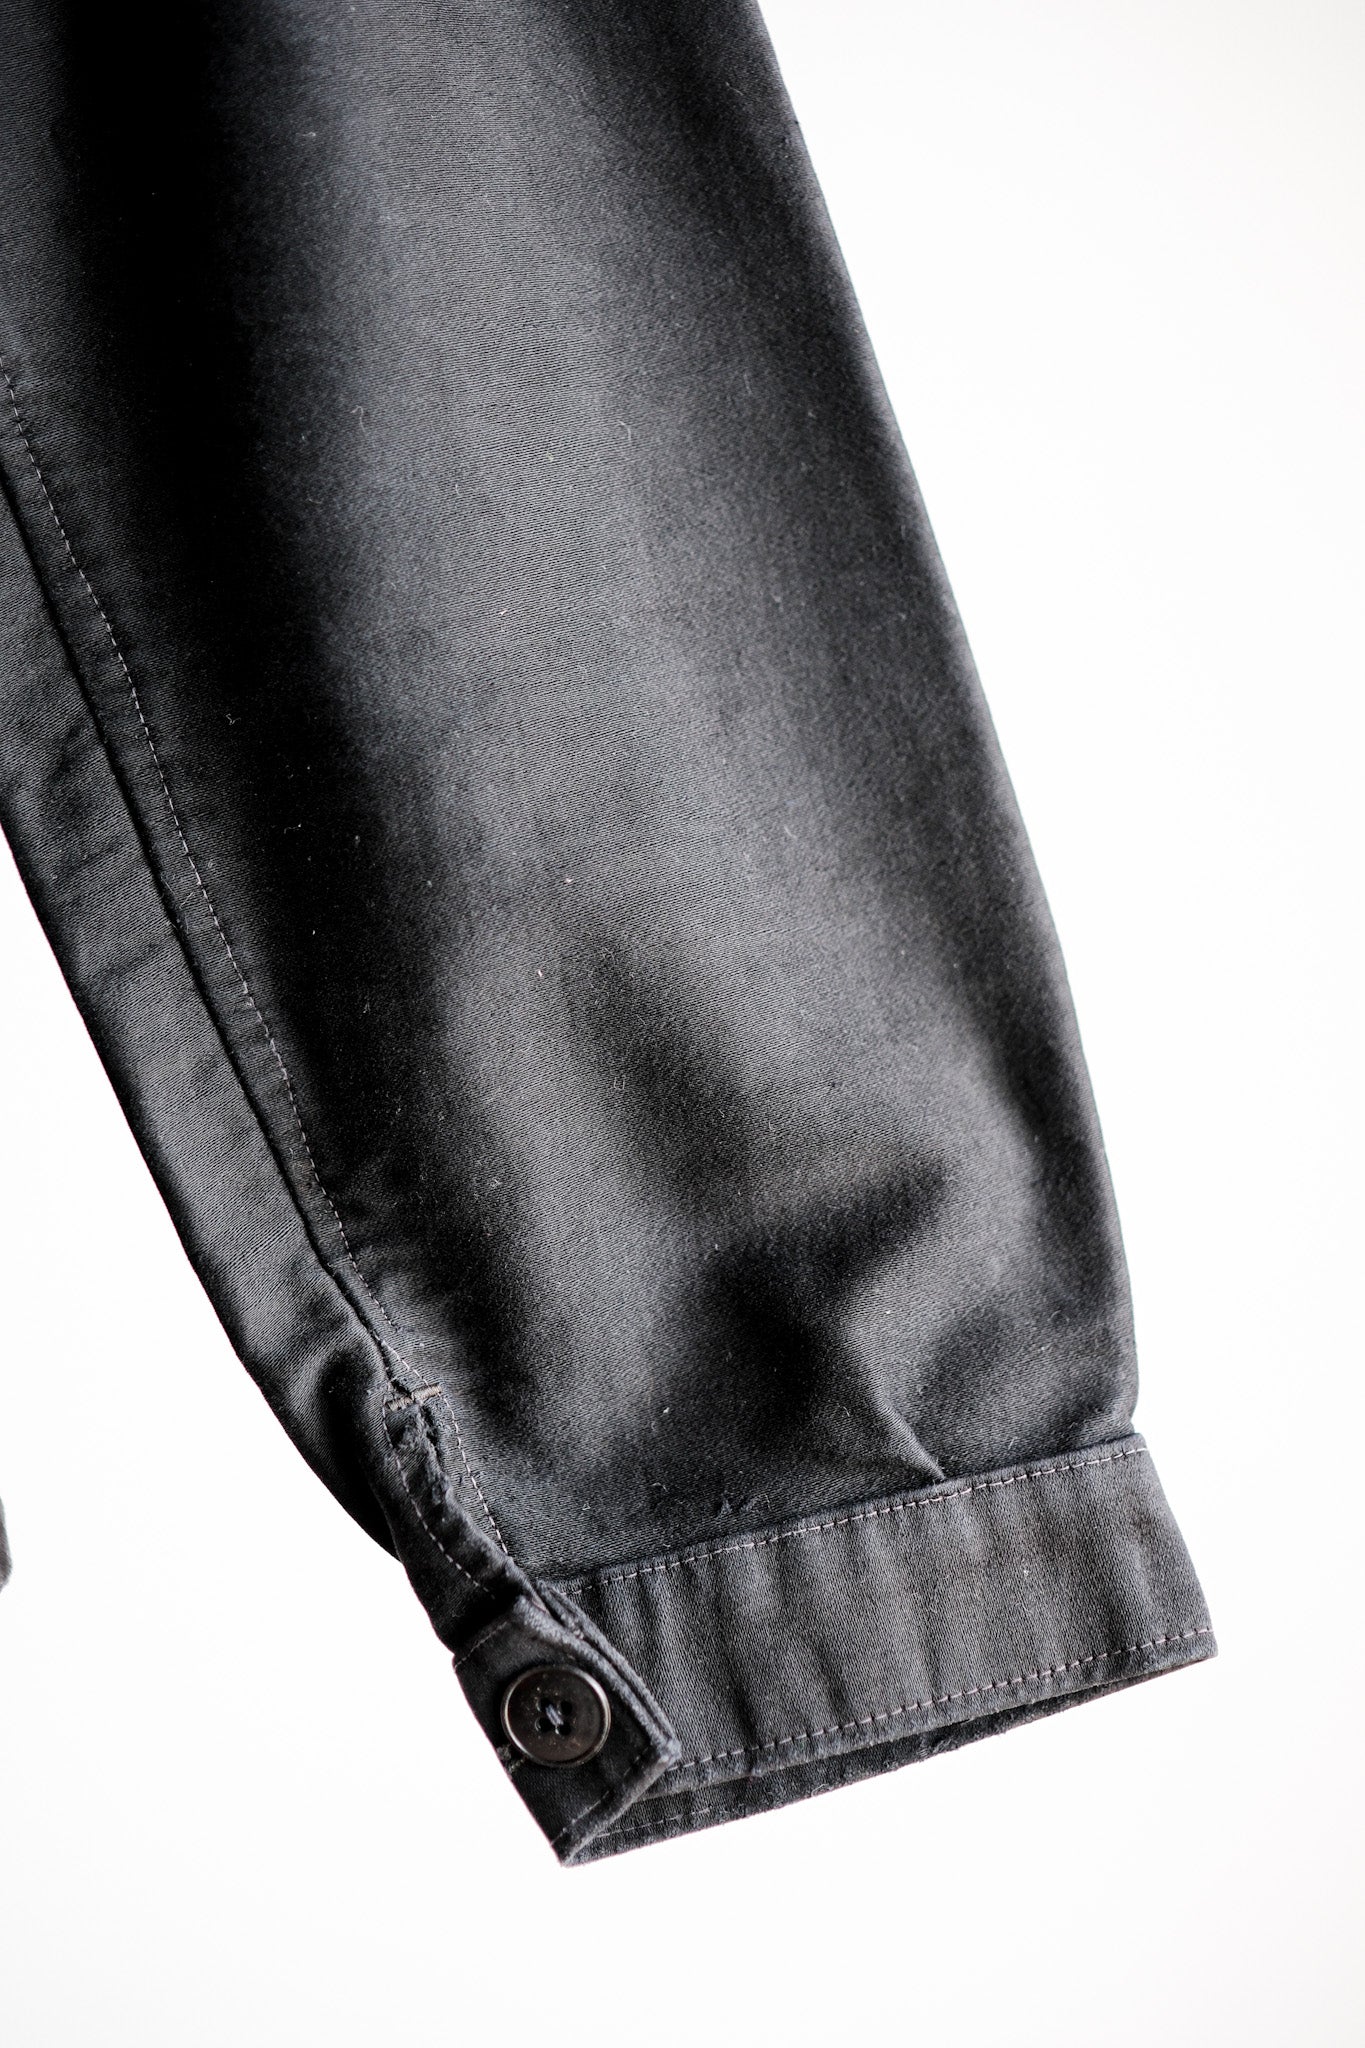 [~ 40's] แจ็คเก็ตตัวตุ่นสีดำวินเทจฝรั่งเศส "กระเป๋าผิดปกติ"